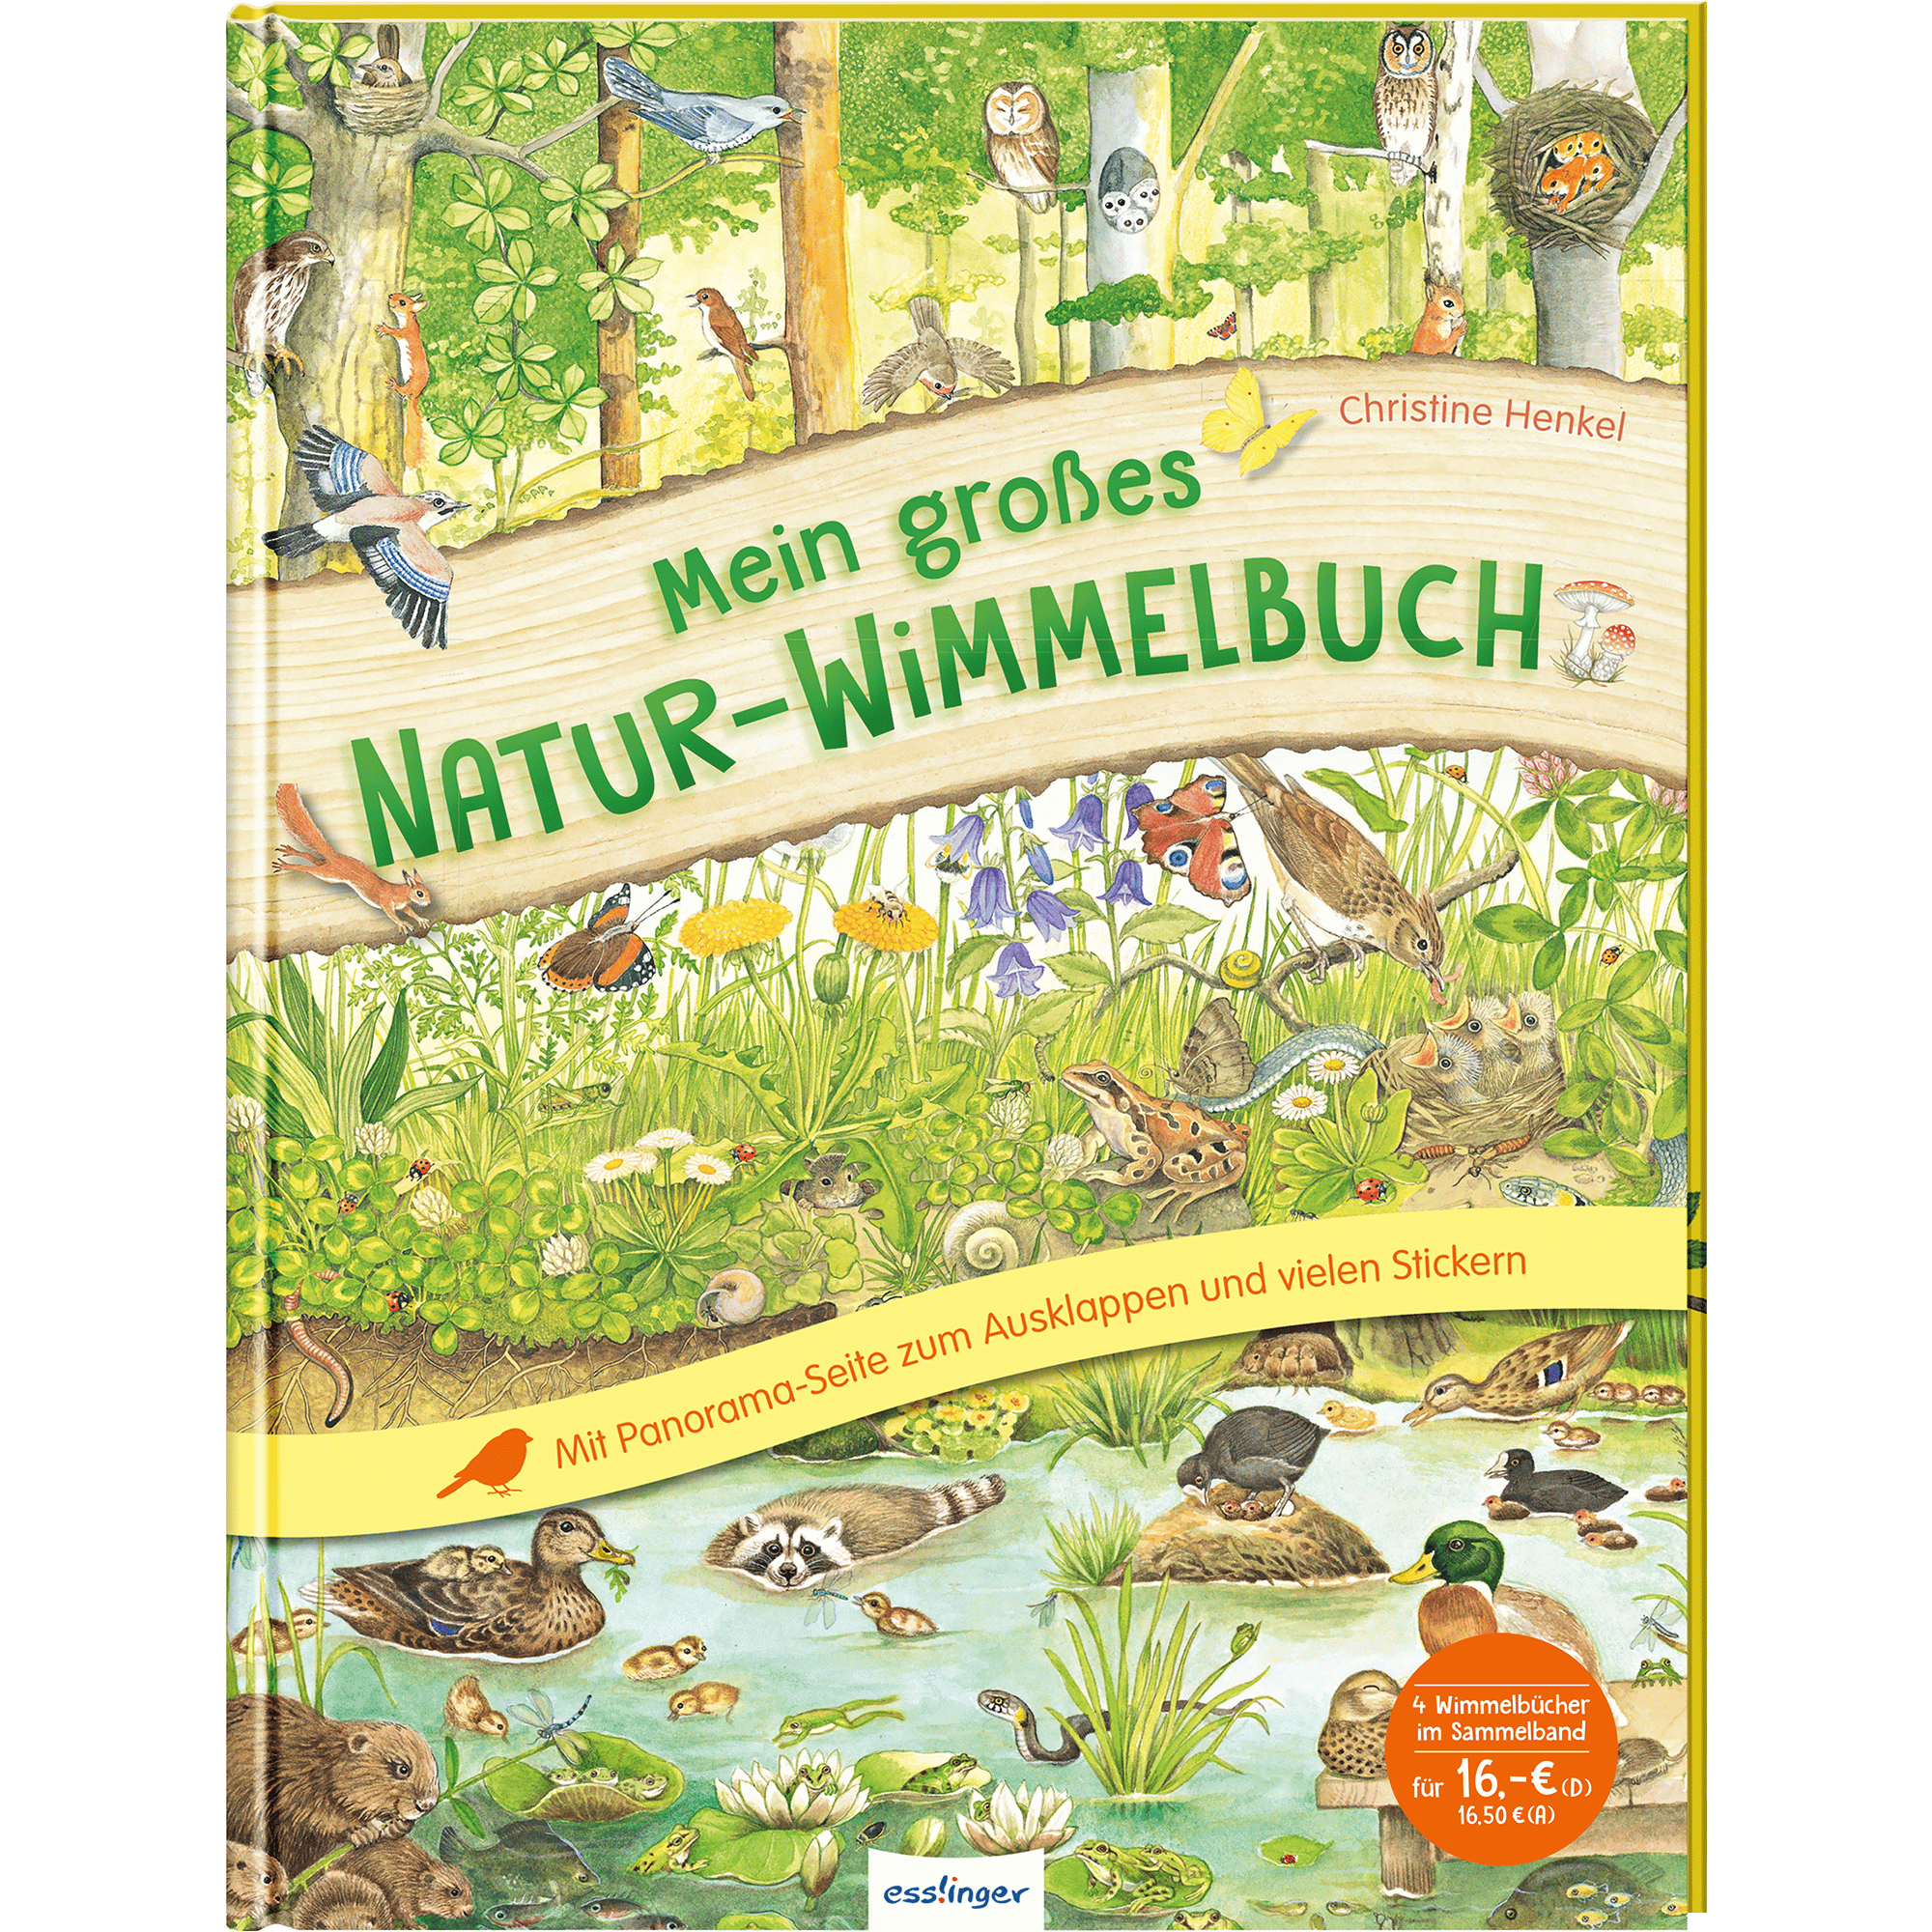 Mein großes Natur-Wimmelbuch ess!inger 2000576423072 1